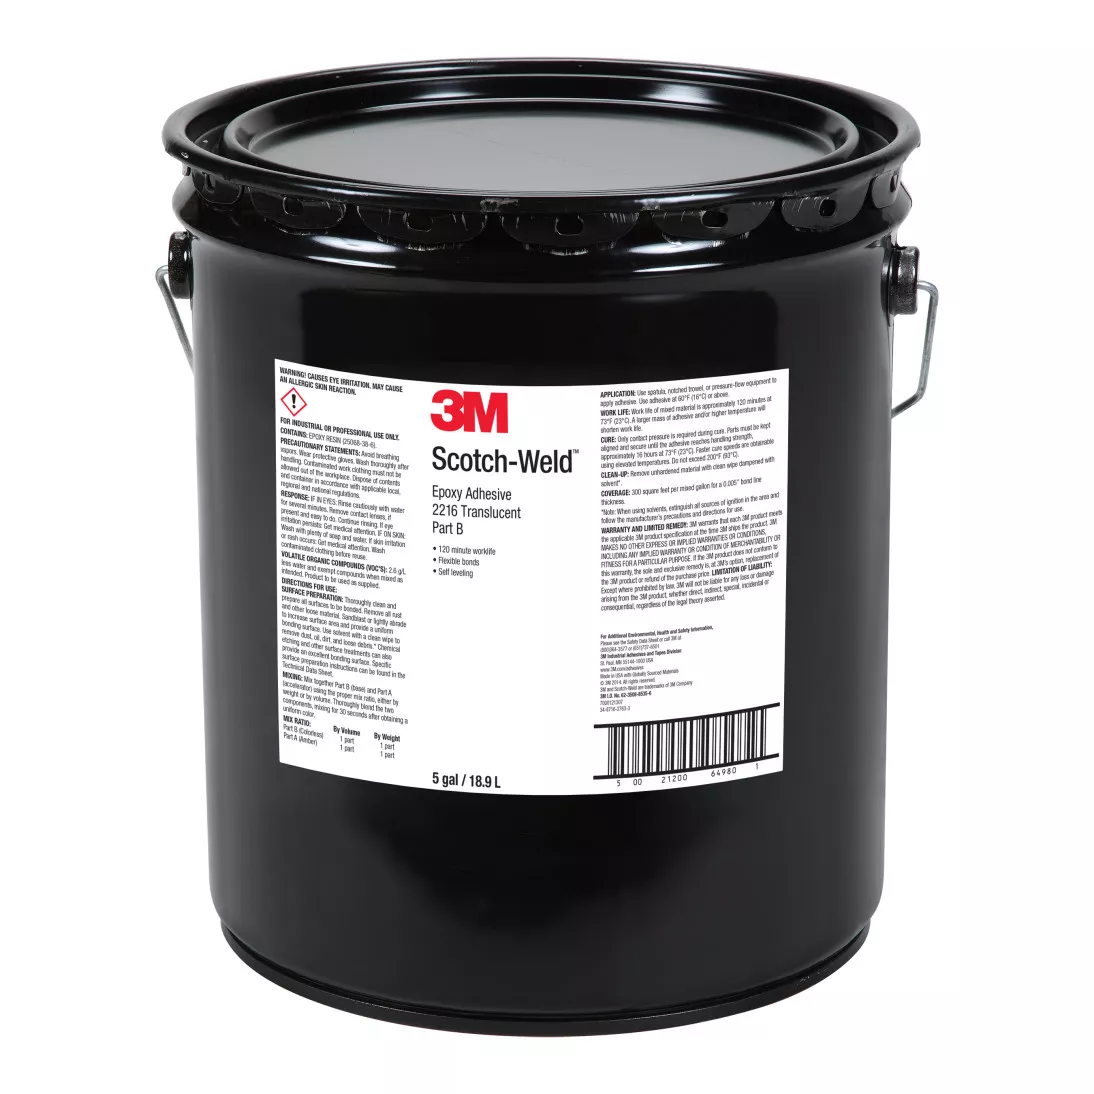 3M™ Scotch-Weld™ Epoxy Adhesive 2216, Translucent, Part B, 5 Gallon Pour
Spout Drum (Pail)